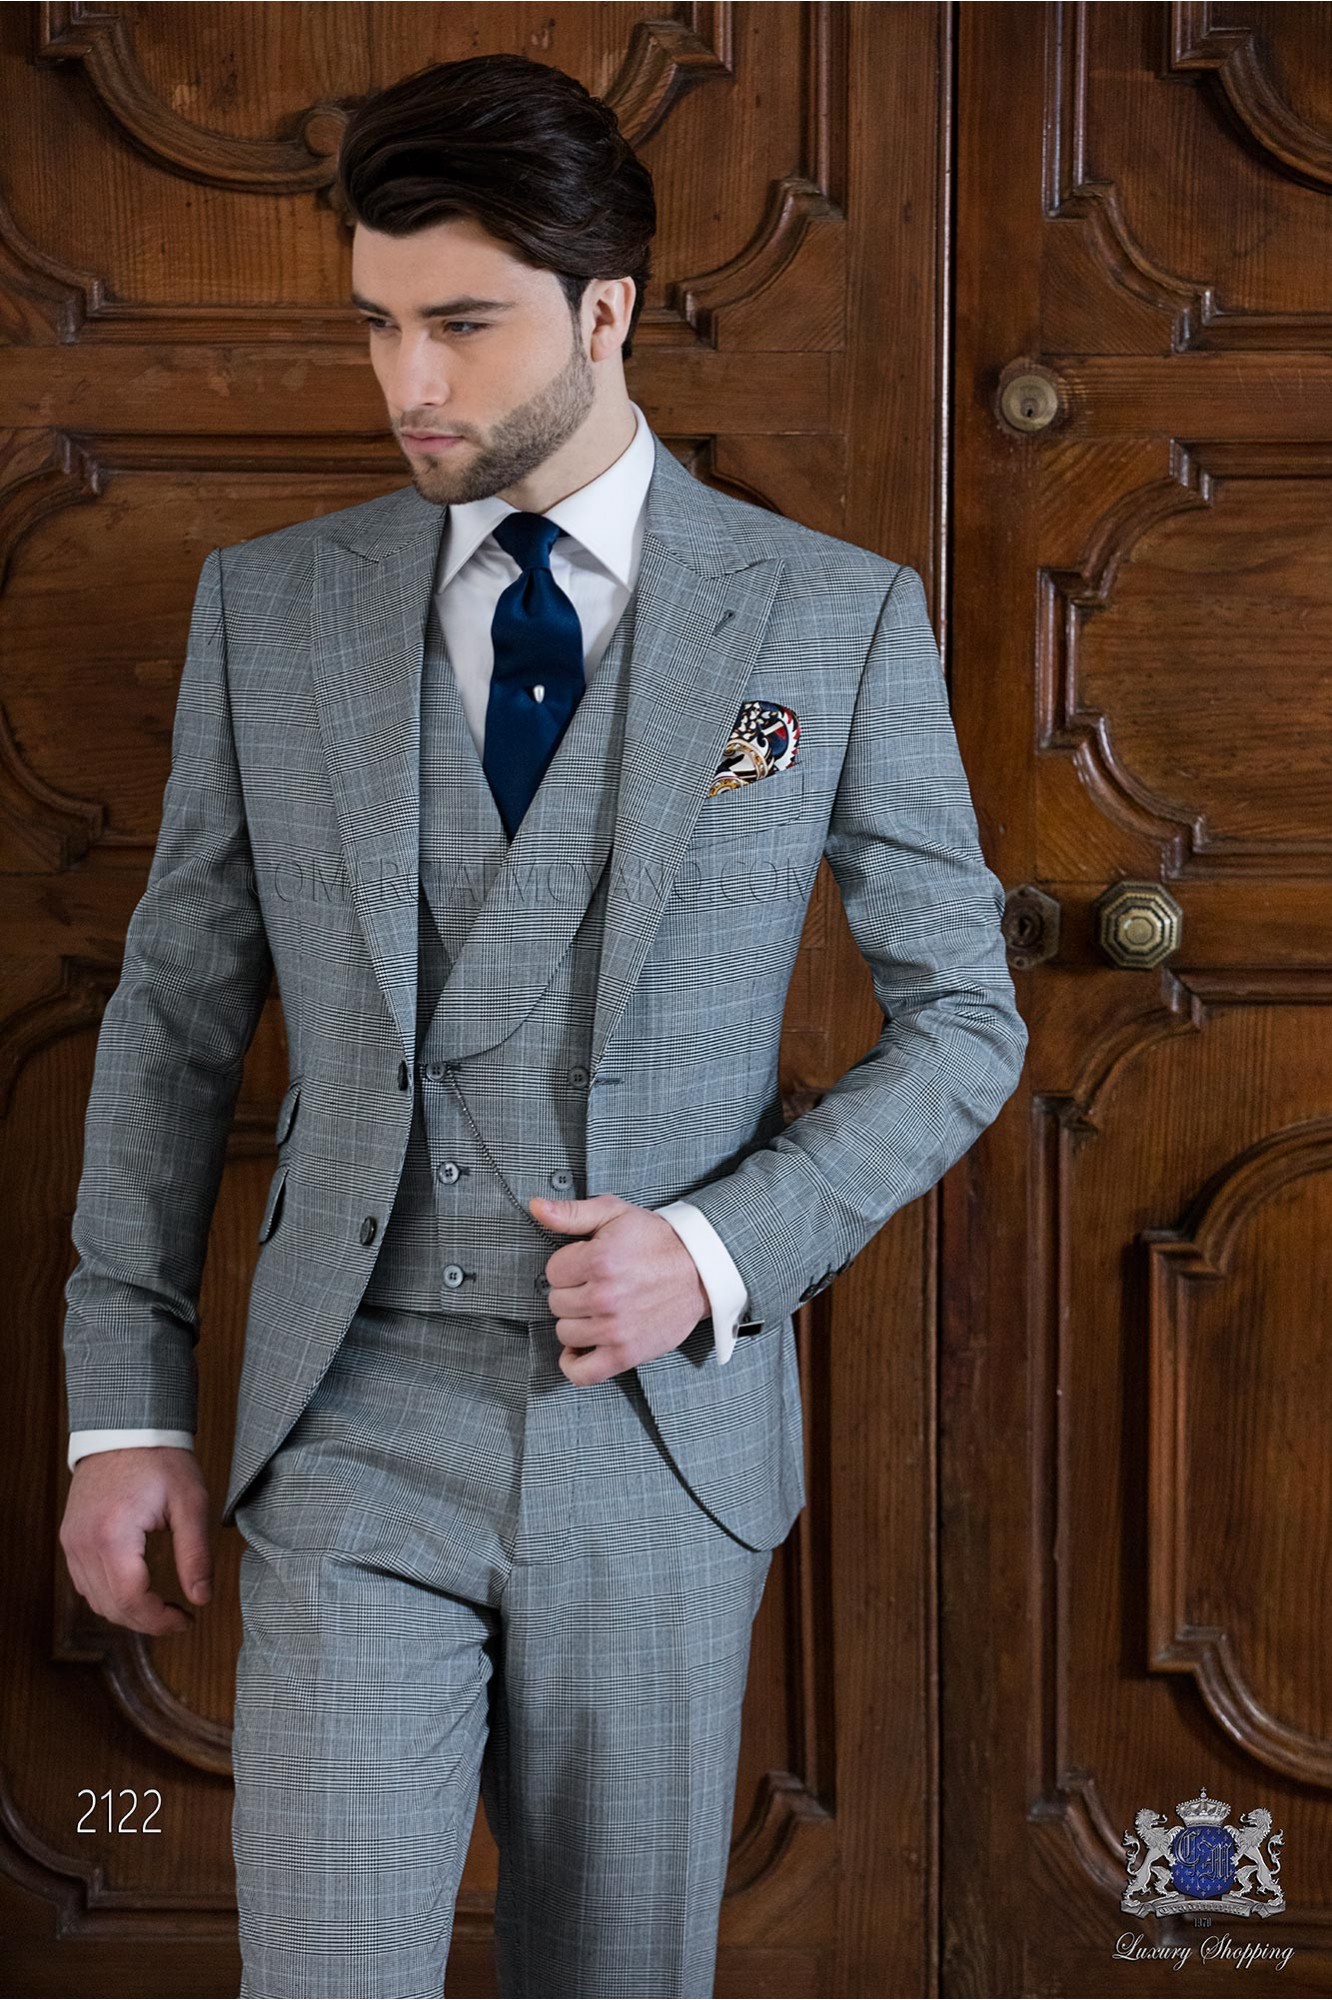 Traje de novio Príncipe de Gales gris y celeste modelo: 2122 Mario Moyano colección Gentleman